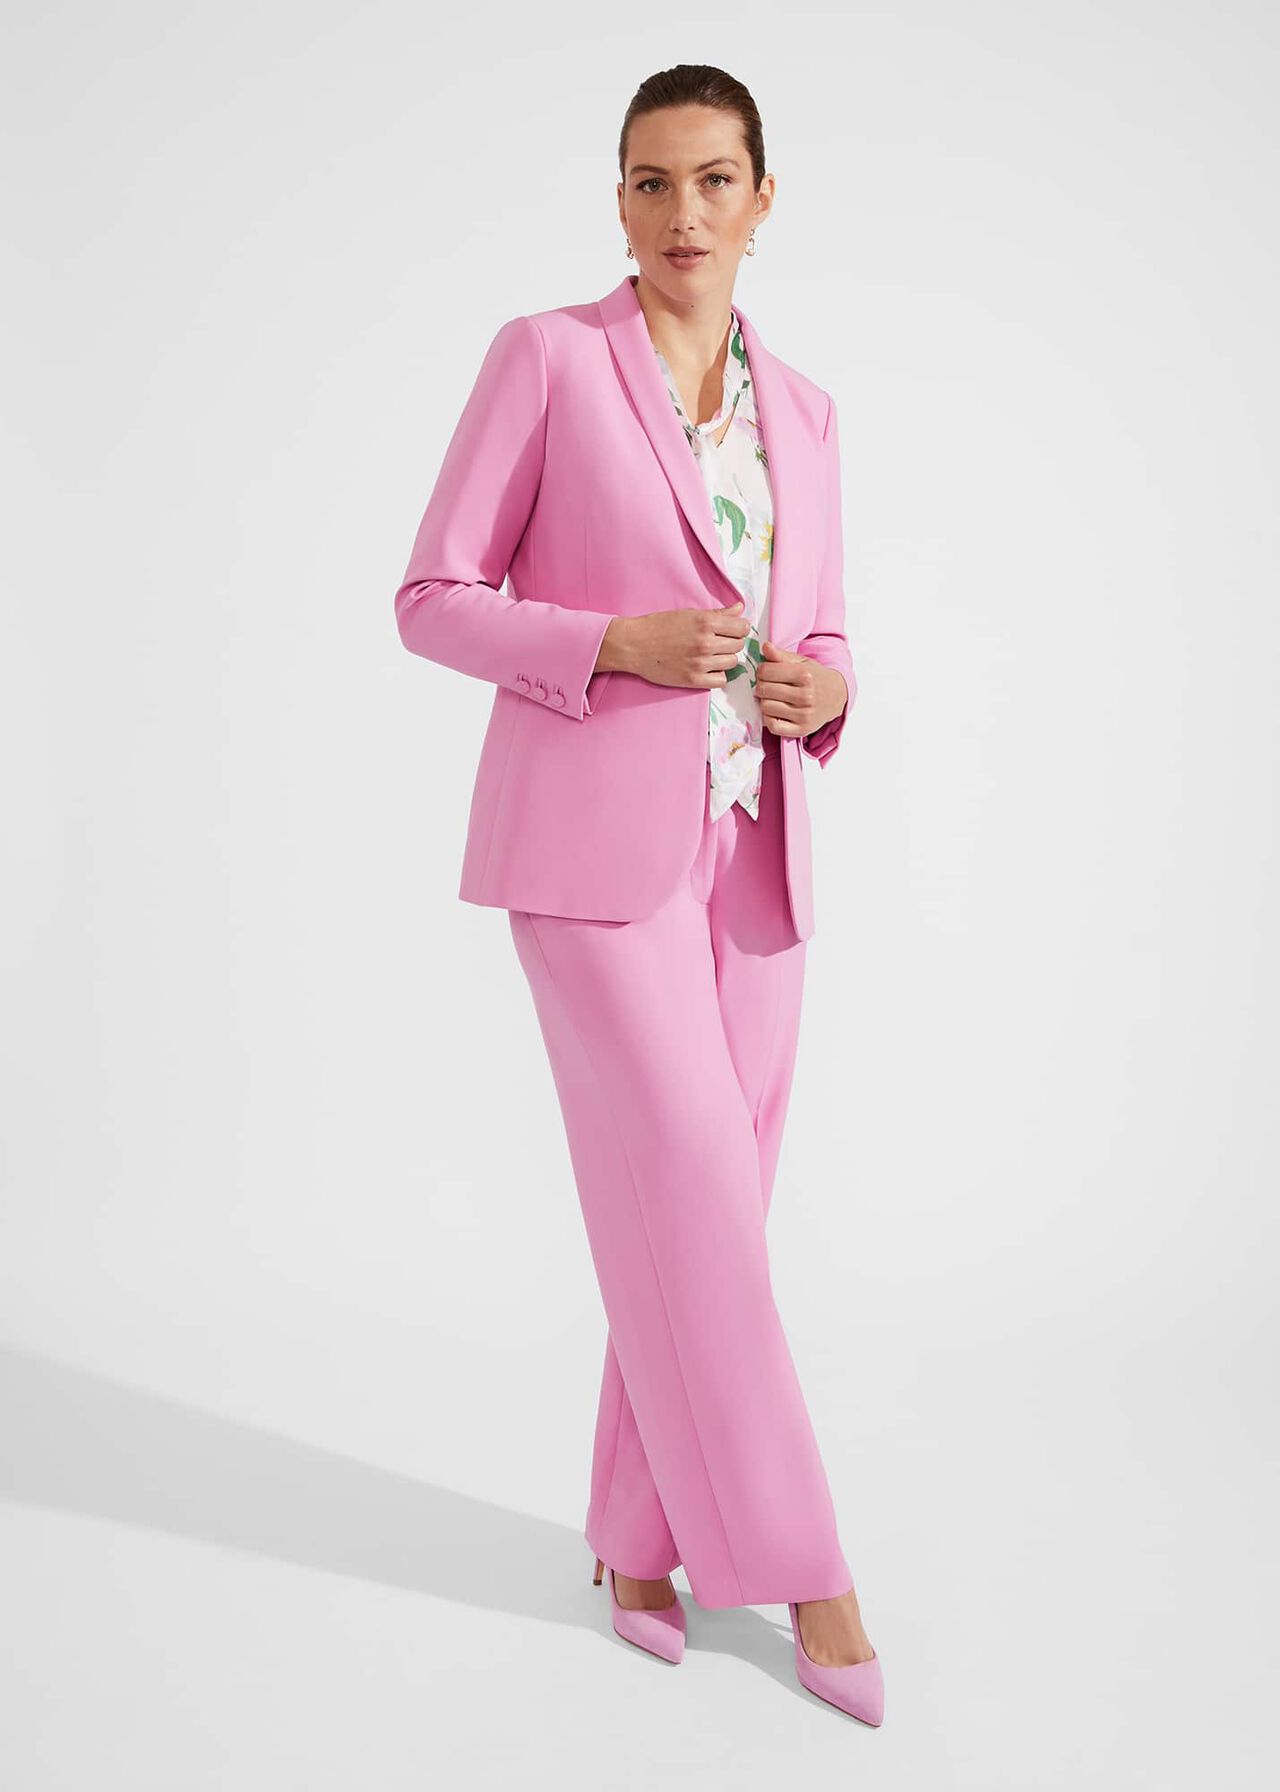 Felicity Jacket, Carnation Pink, hi-res